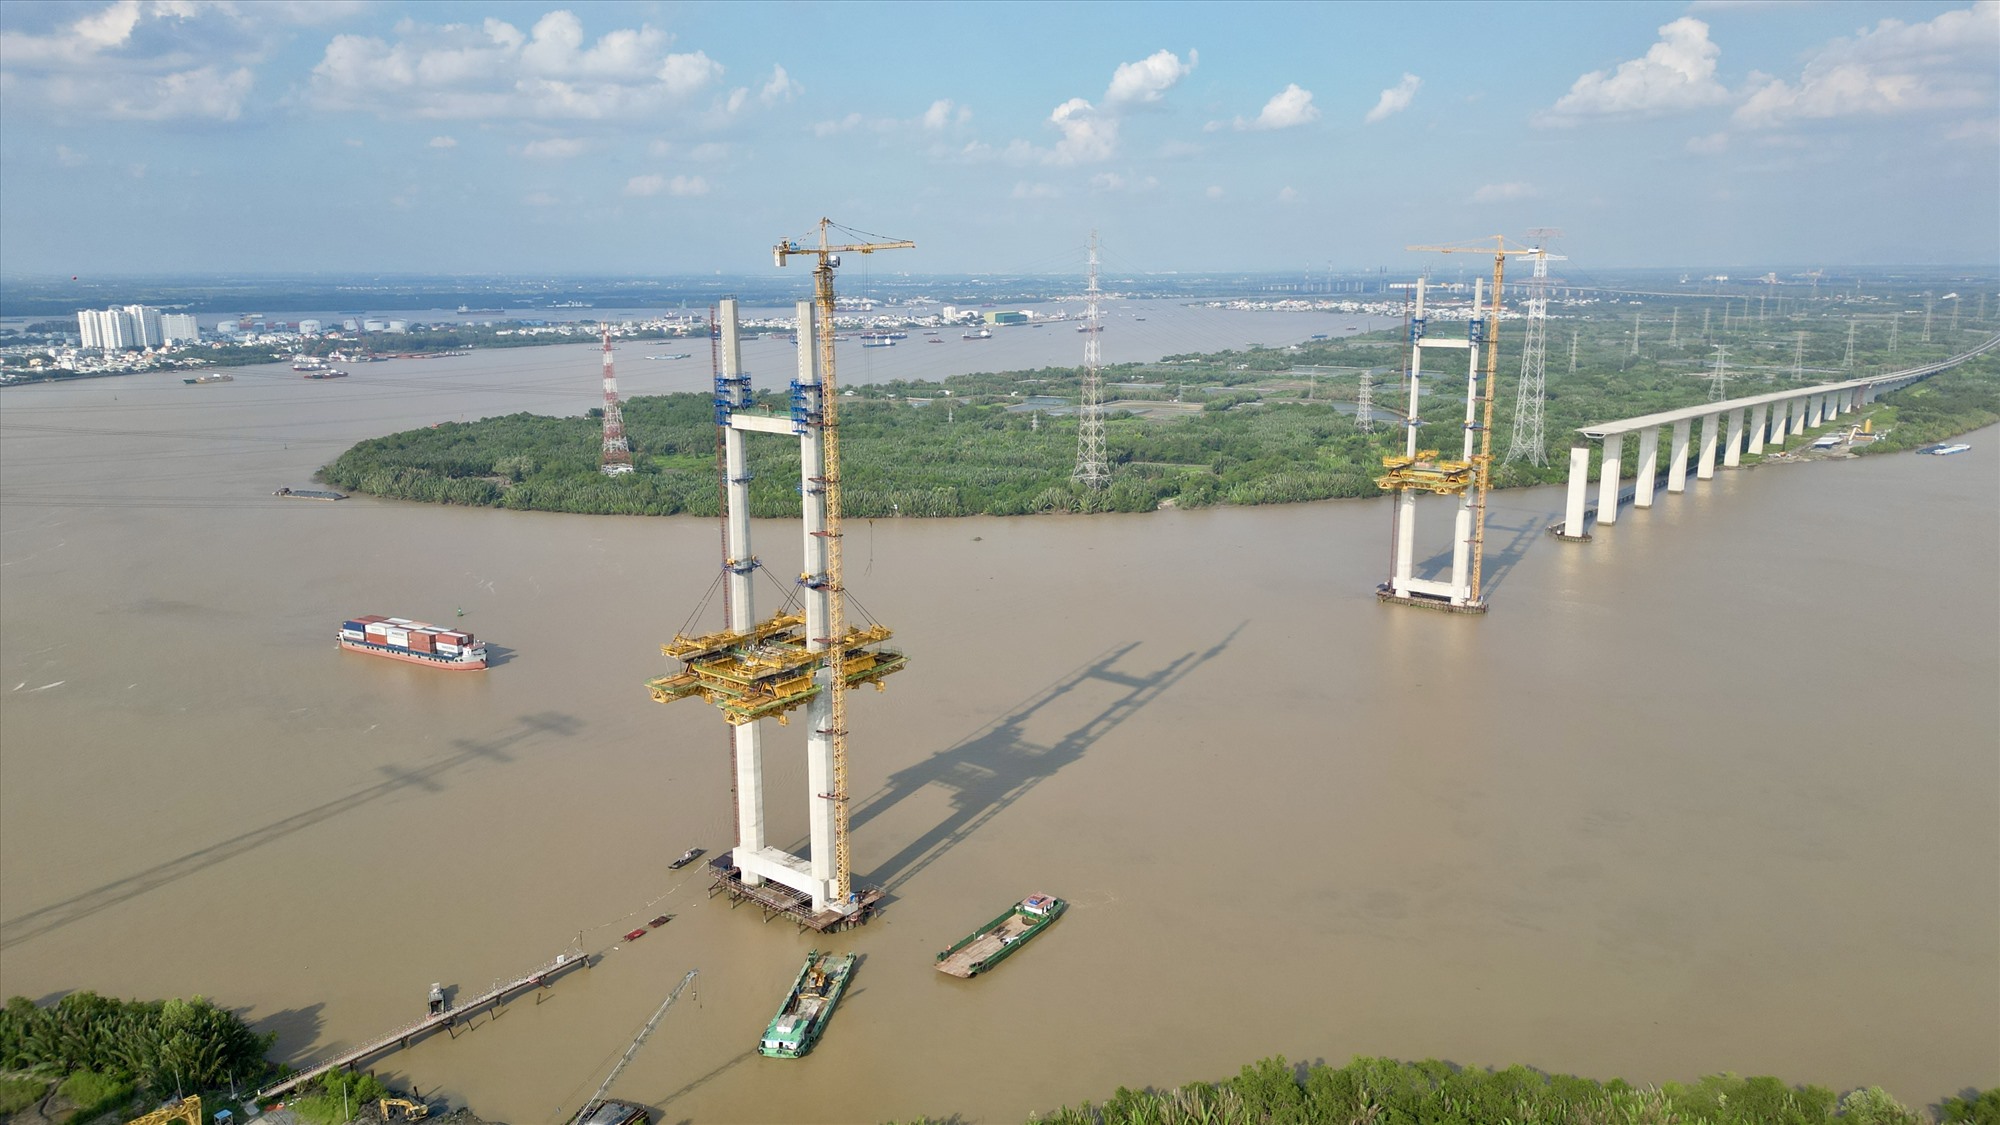 Cùng với độ cao của 2 nhịp dây văng, cầu Bình Khánh có tĩnh không thông thuyền lên tới 55m, cao nhất Việt Nam thời điểm hiện tại. Chiều cao khoảng không giữa gầm cầu với mặt nước được thiết kế để phục vụ những tàu thuyền trọng tải lớn thường xuyên lưu thông trên sông Soài Rạp - tuyến vận tải thủy chính của TPHCM.